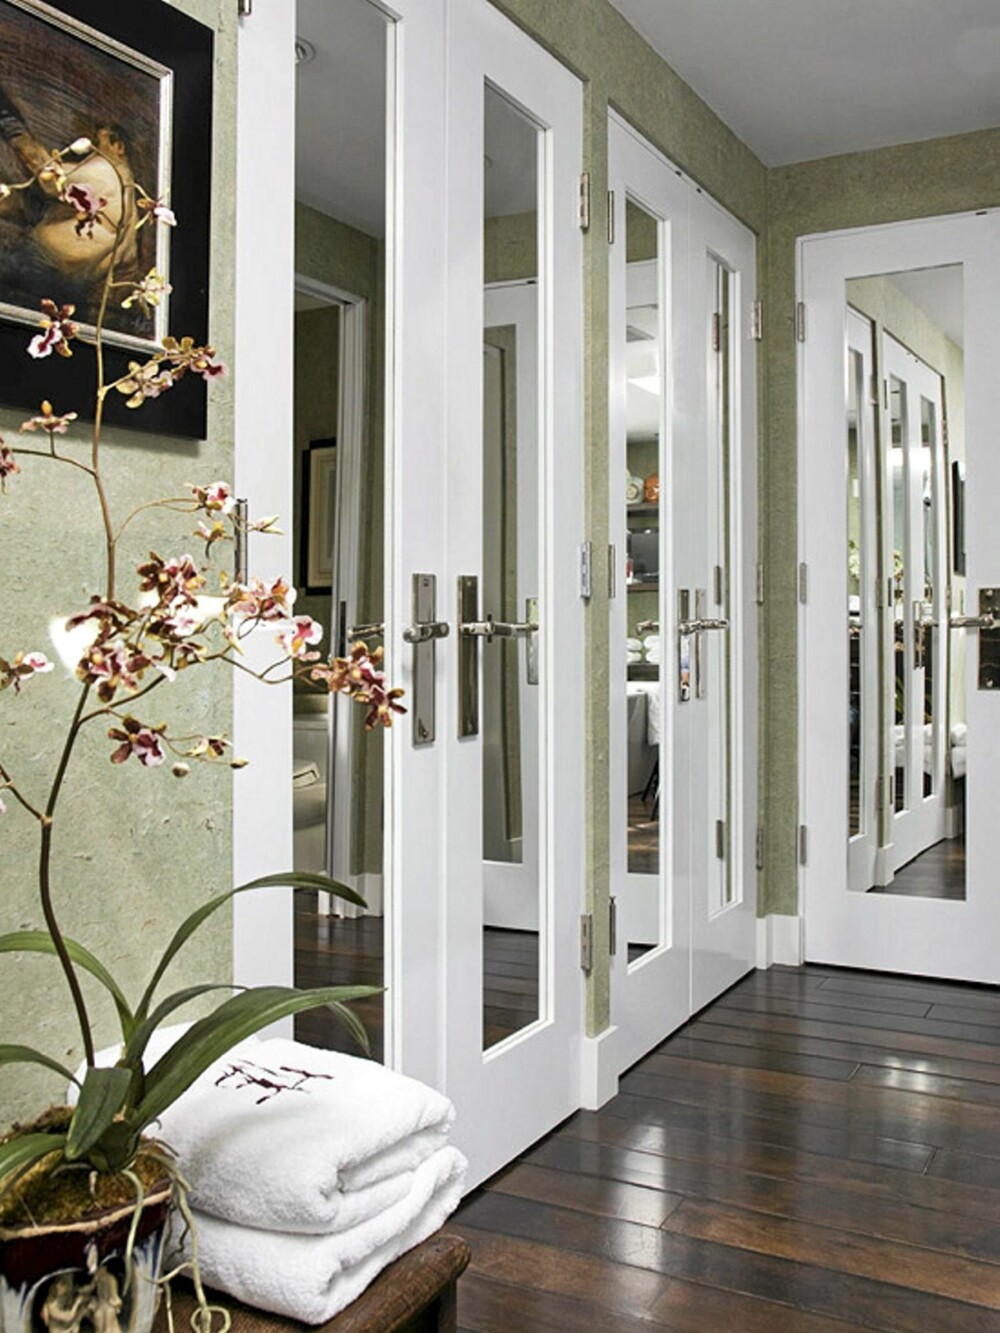 SPEIL: Speil på skapdørene kan gi en visuelt forstørrende effekt til rommet.